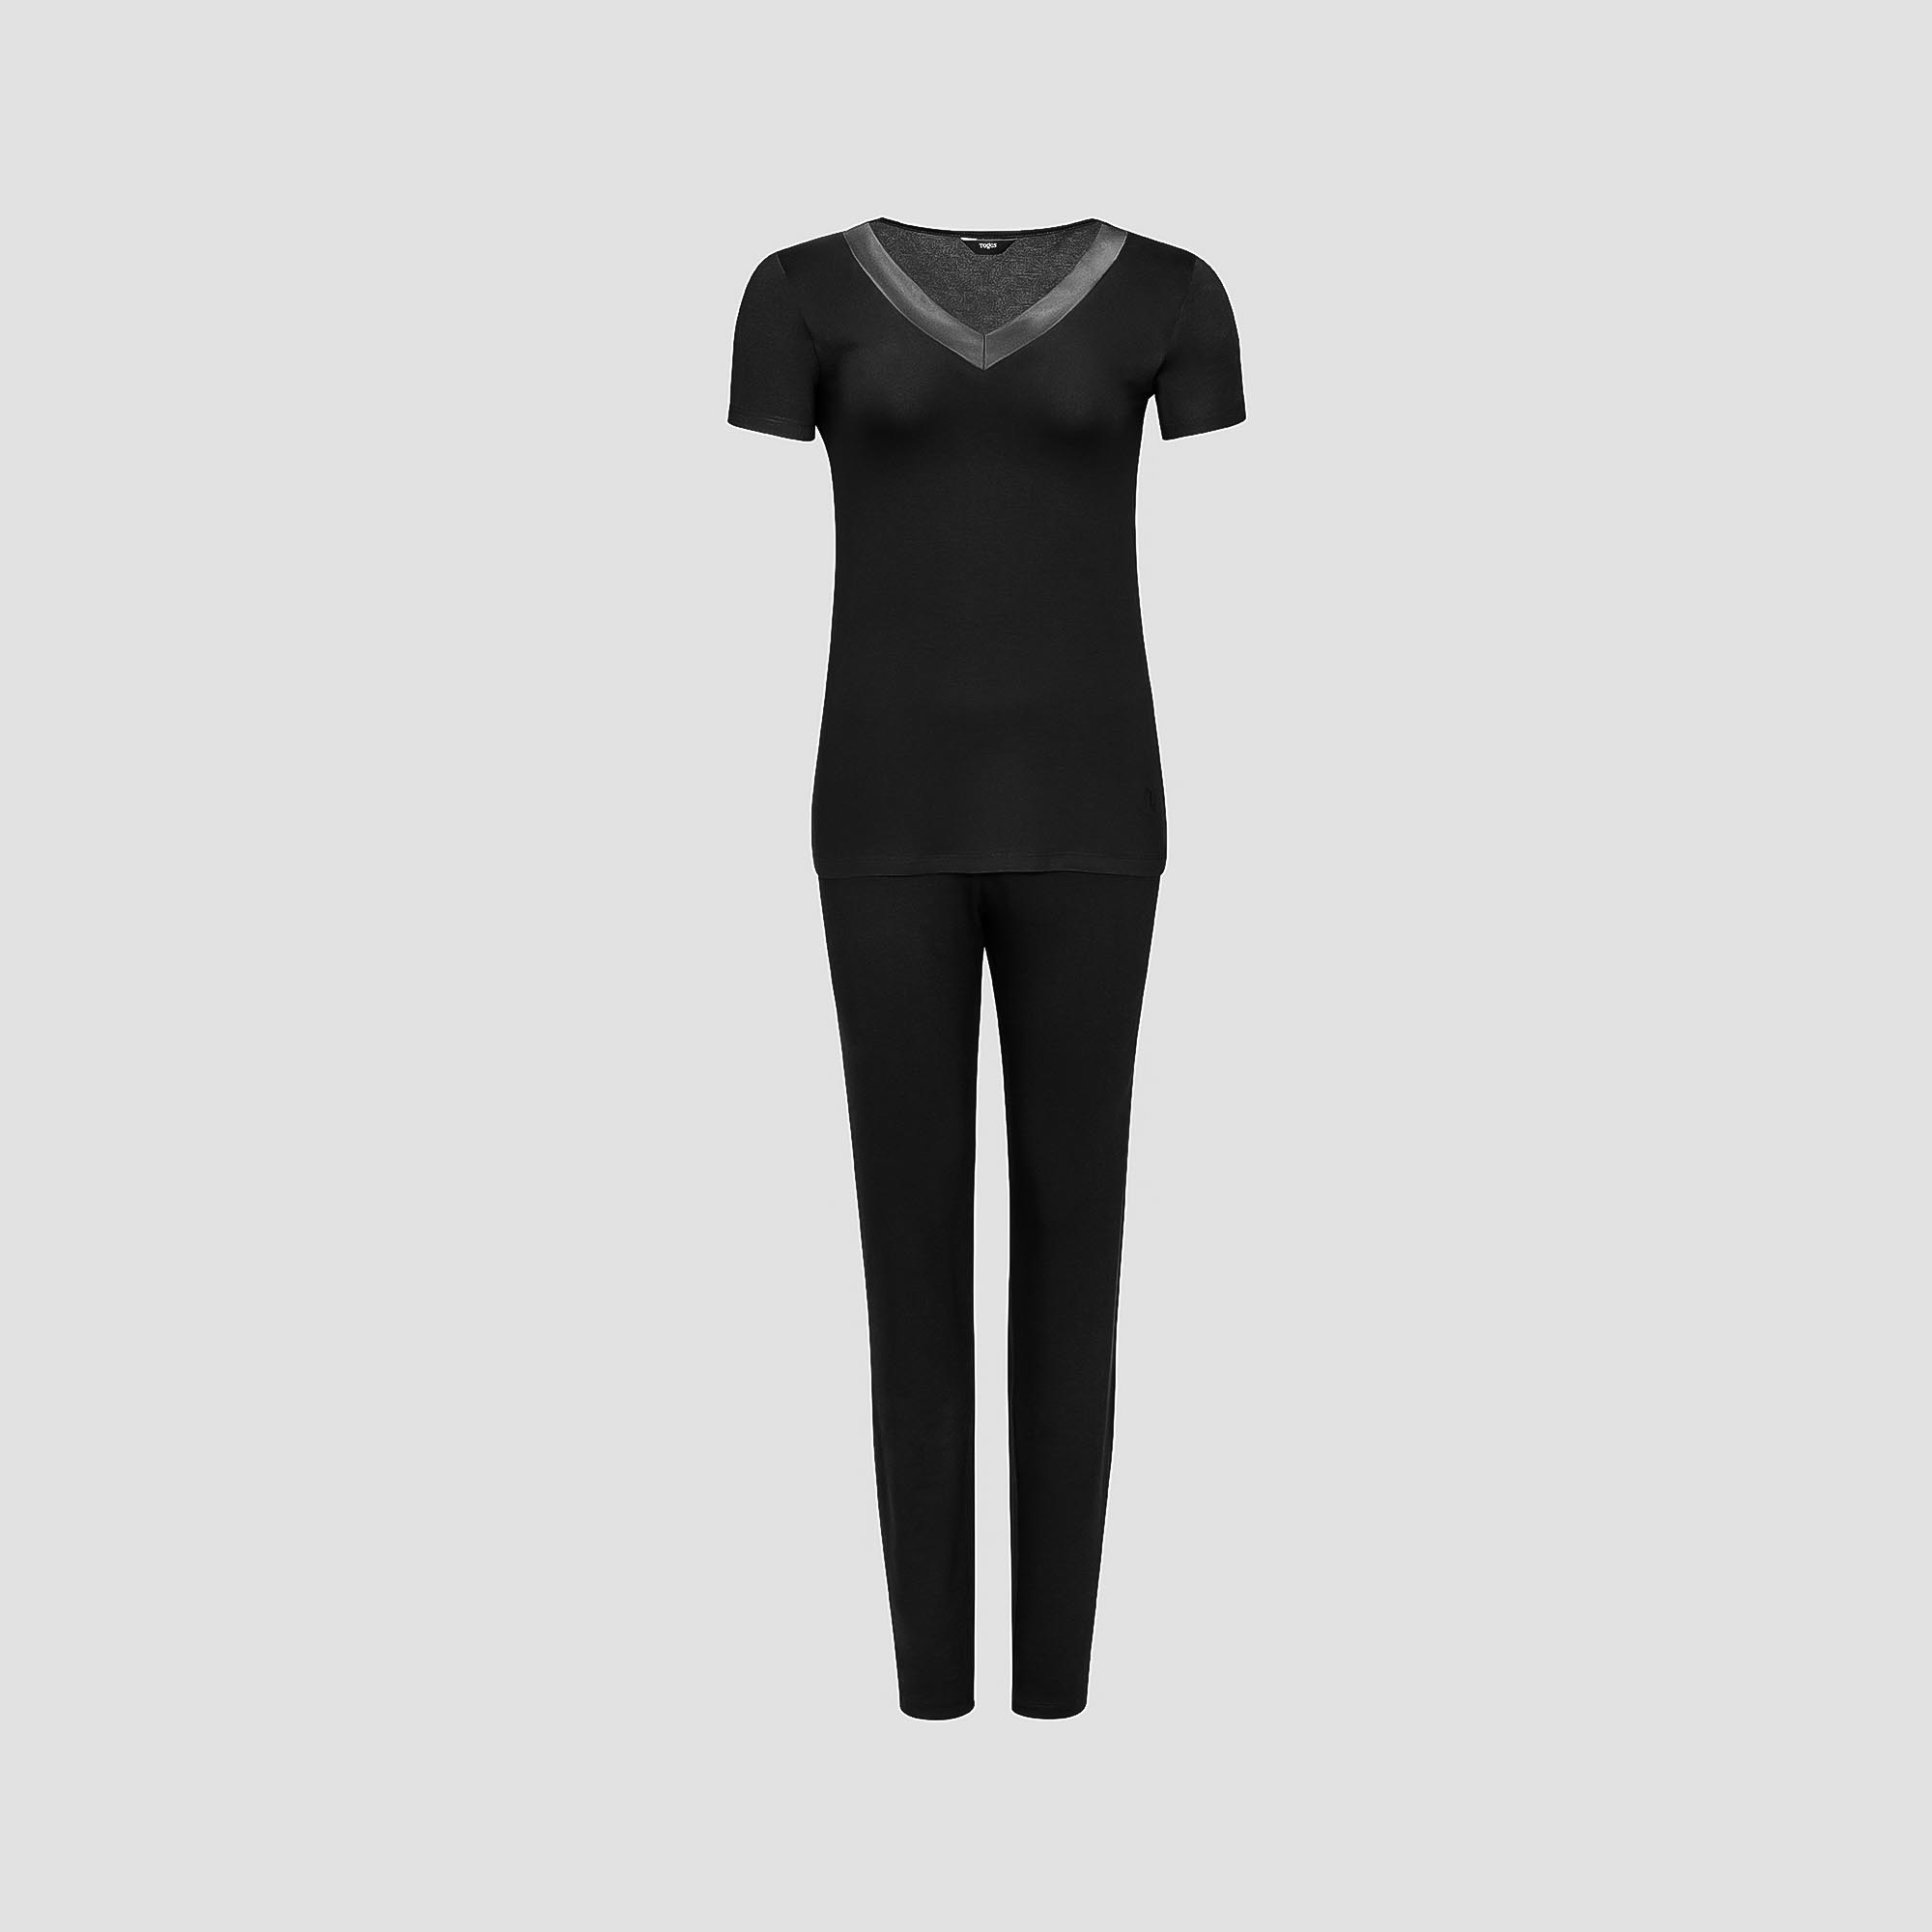 Пижама Togas Ингелла черная женская L(48) 2 предмета жен пижама с шортами арт 23 0106 бордовый р 44